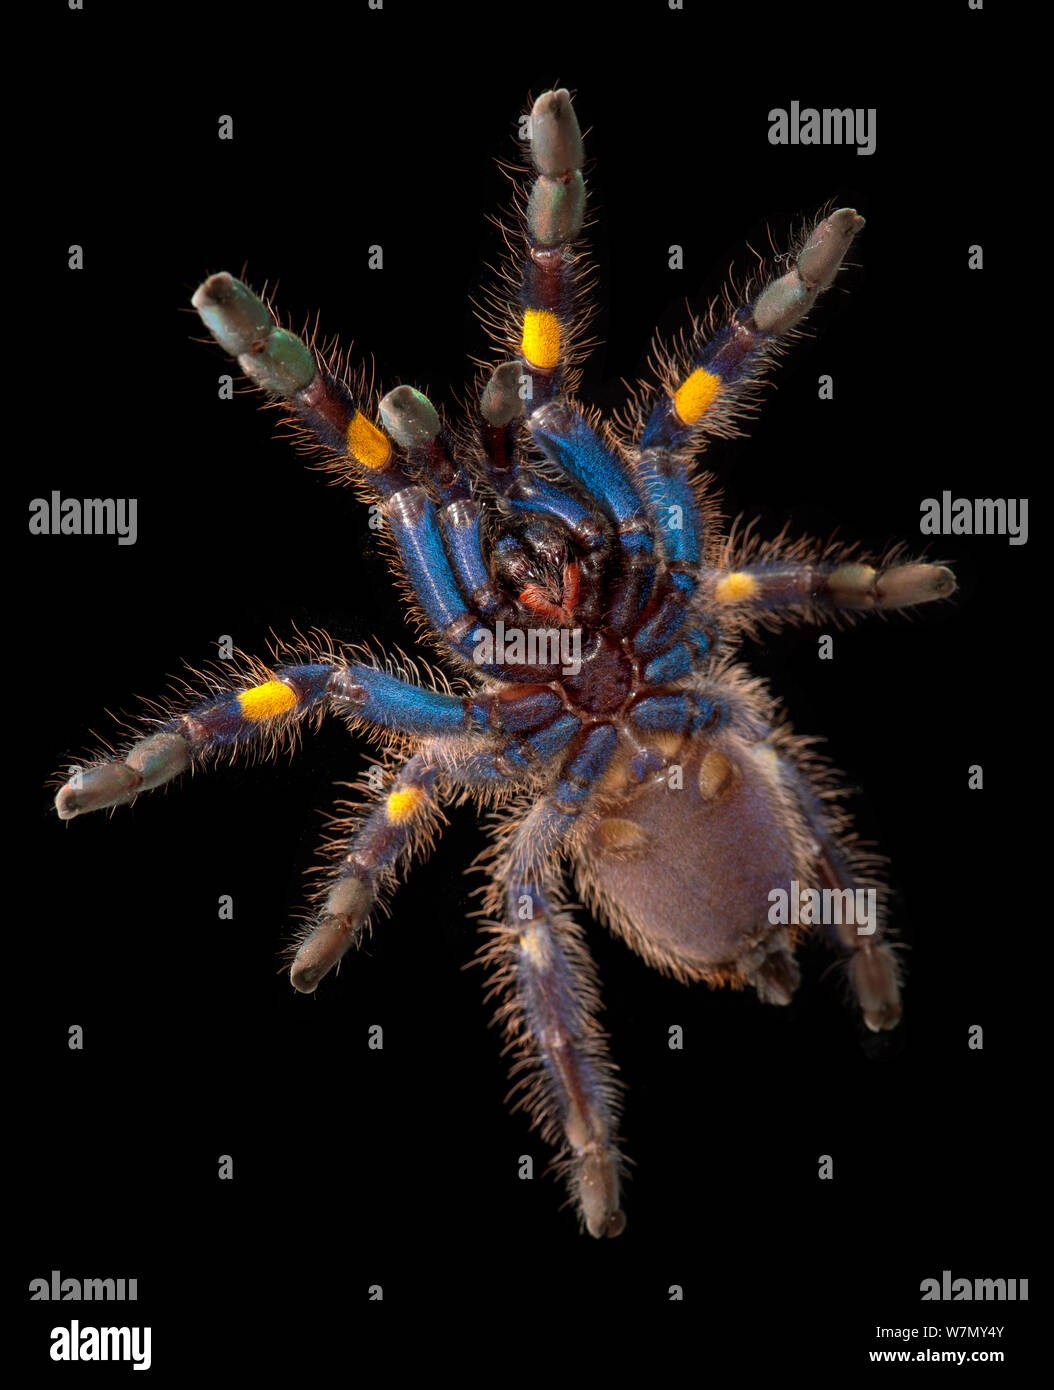 Zaffiro Gooty albero ornamentale Spider (Poecilotheria metallica), vista ventrale. captive, dall'Asia, criticamente minacciata di estinzione. Foto Stock